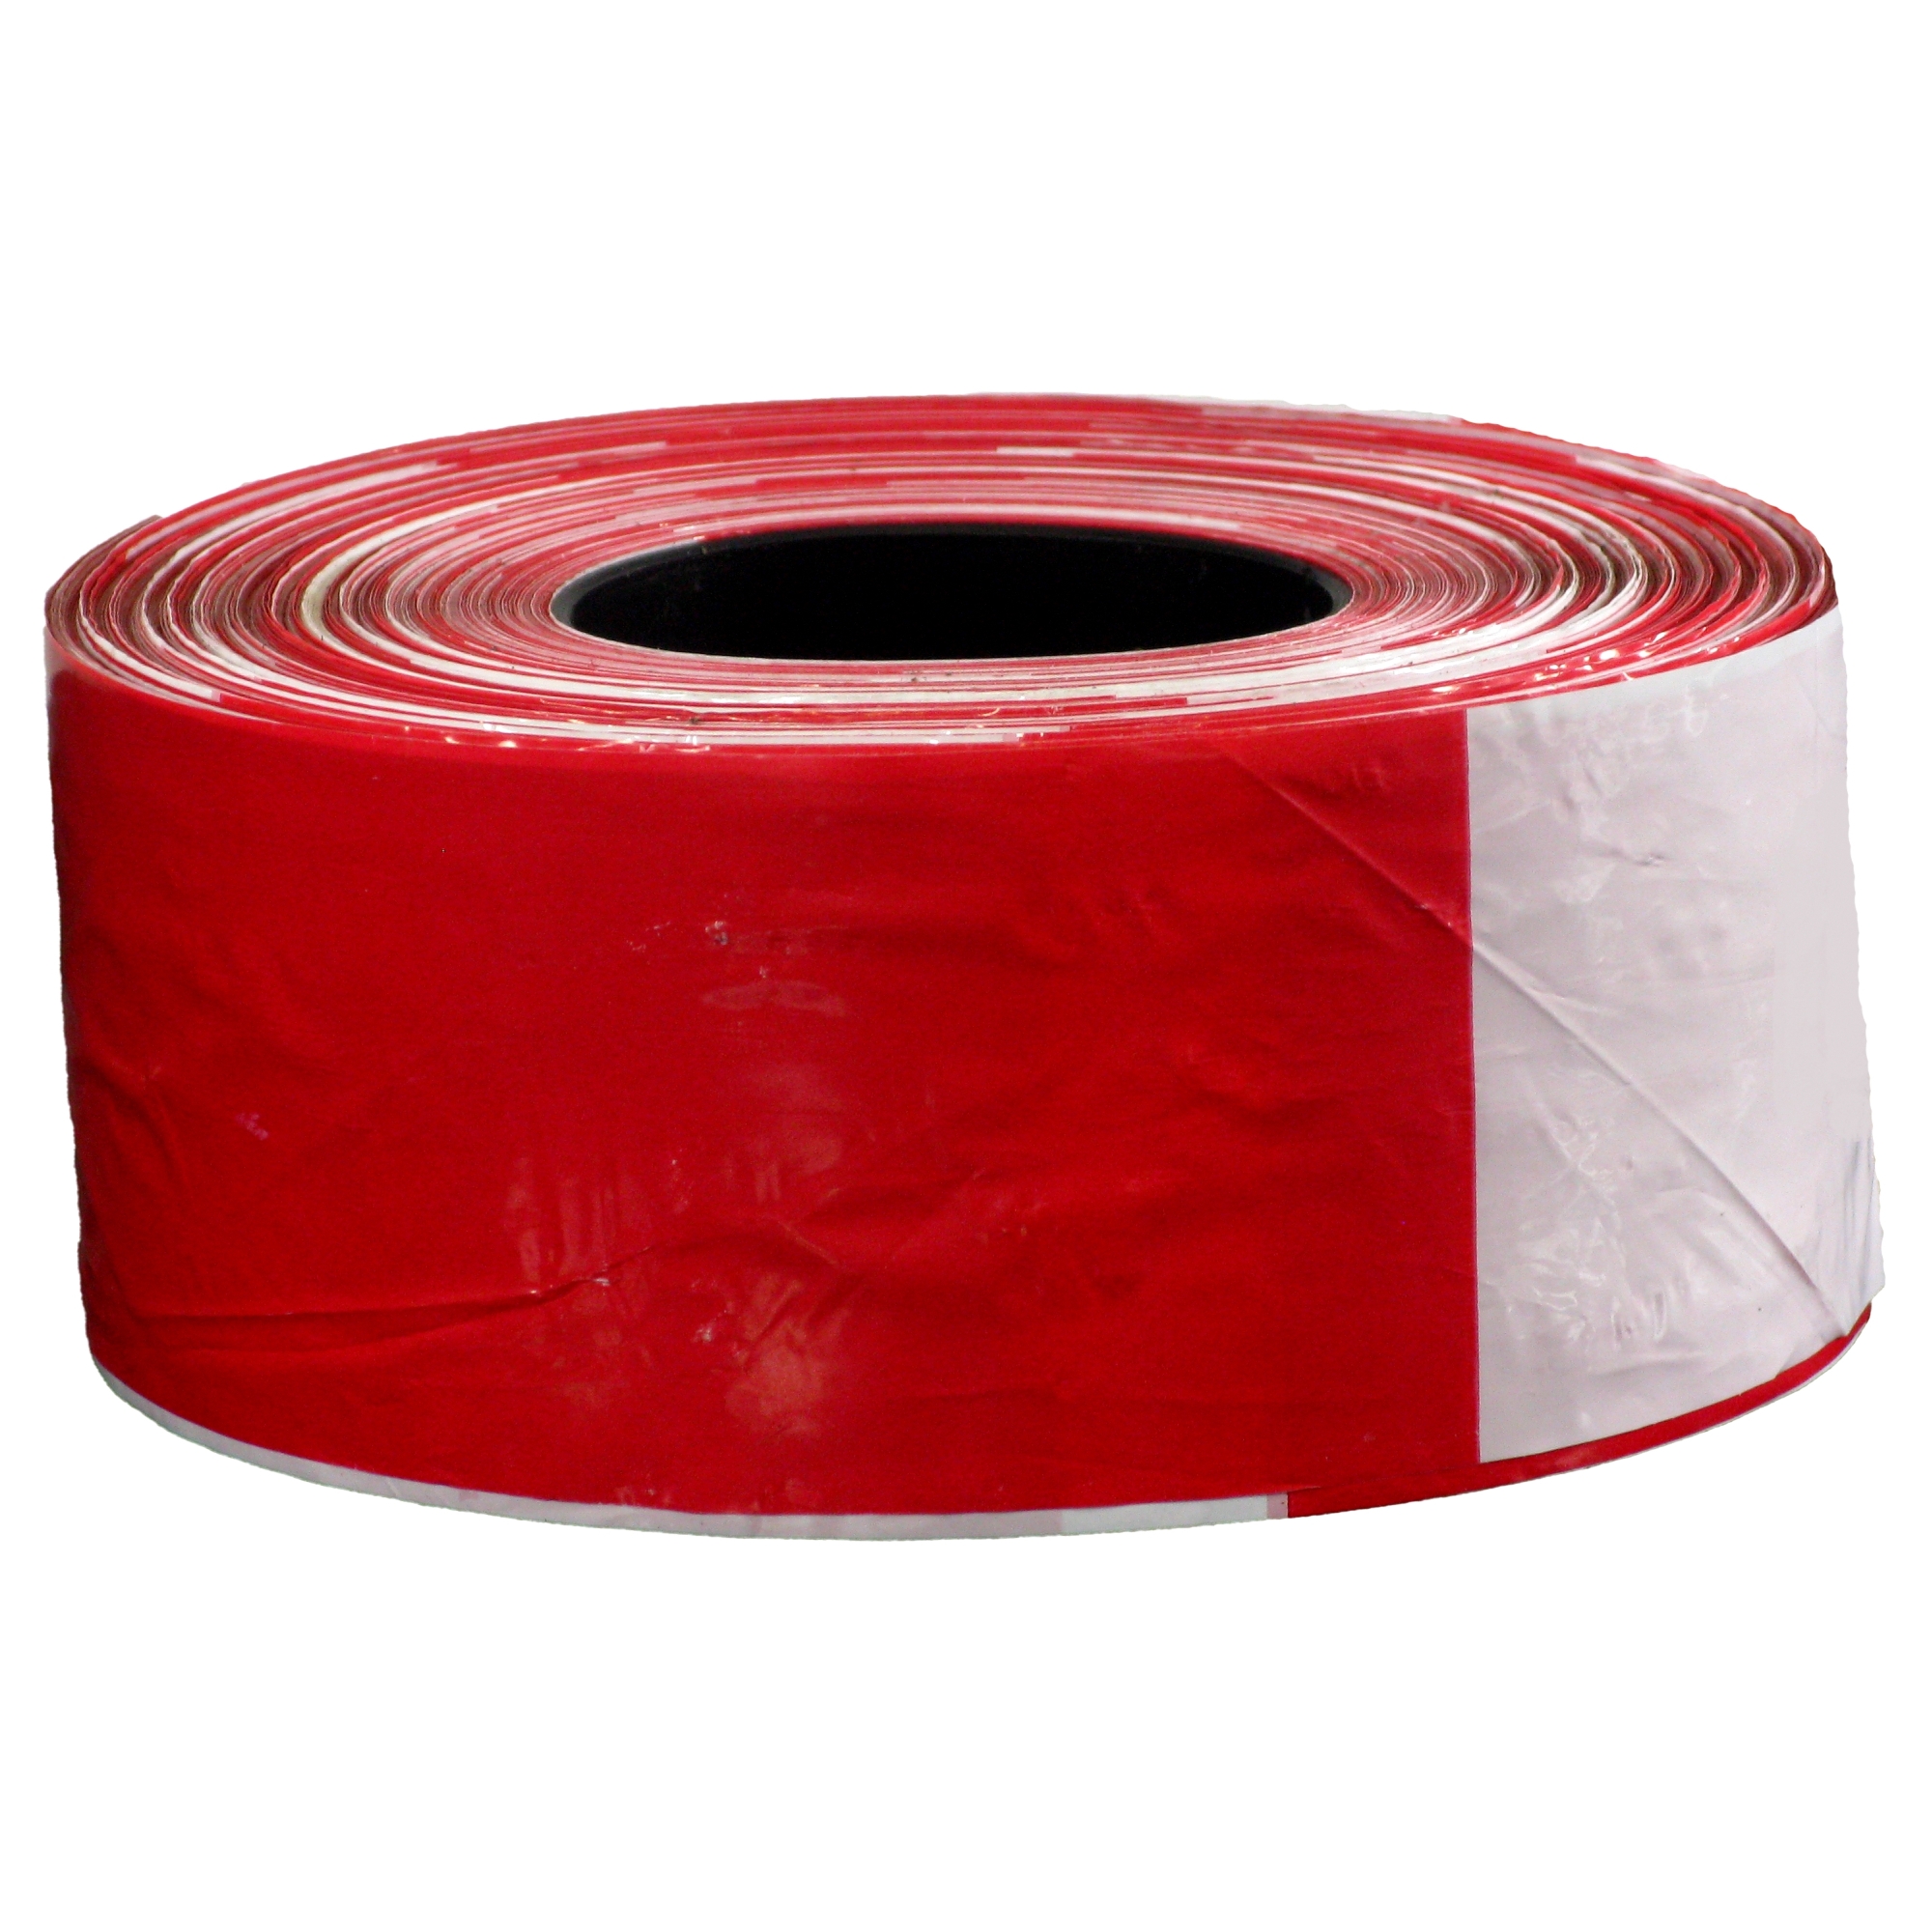 Absperrband Basic, rot/weiß schraffiert, Polyethylen, 75mm, 500m/Rolle, 500  m